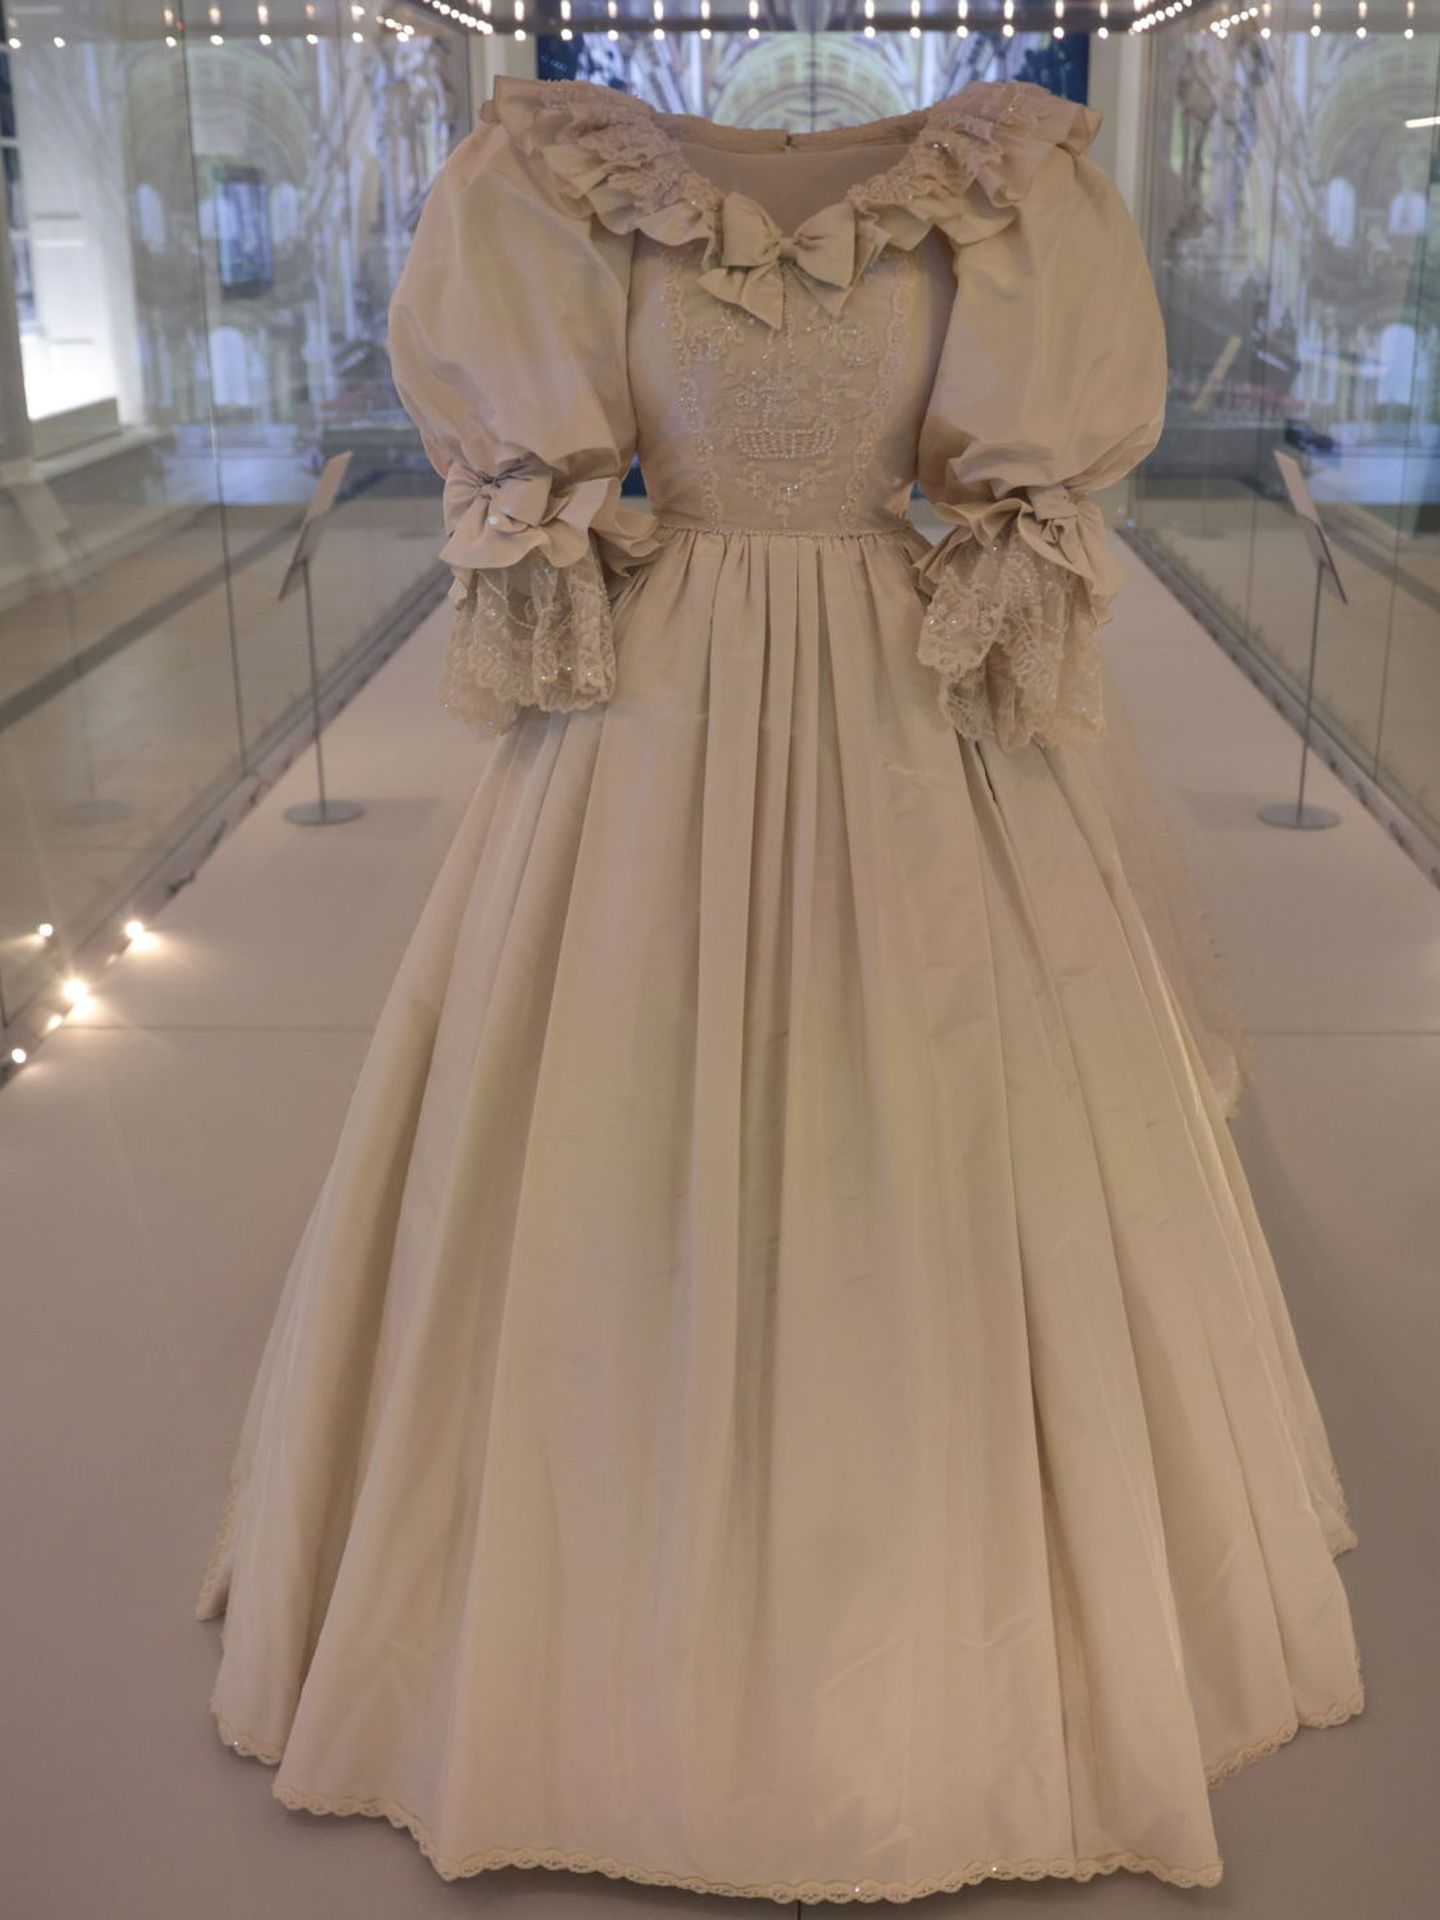 El vestido de novia de Diana está expuesto en Kensington Palace. (Reuters/Hannah McKay)